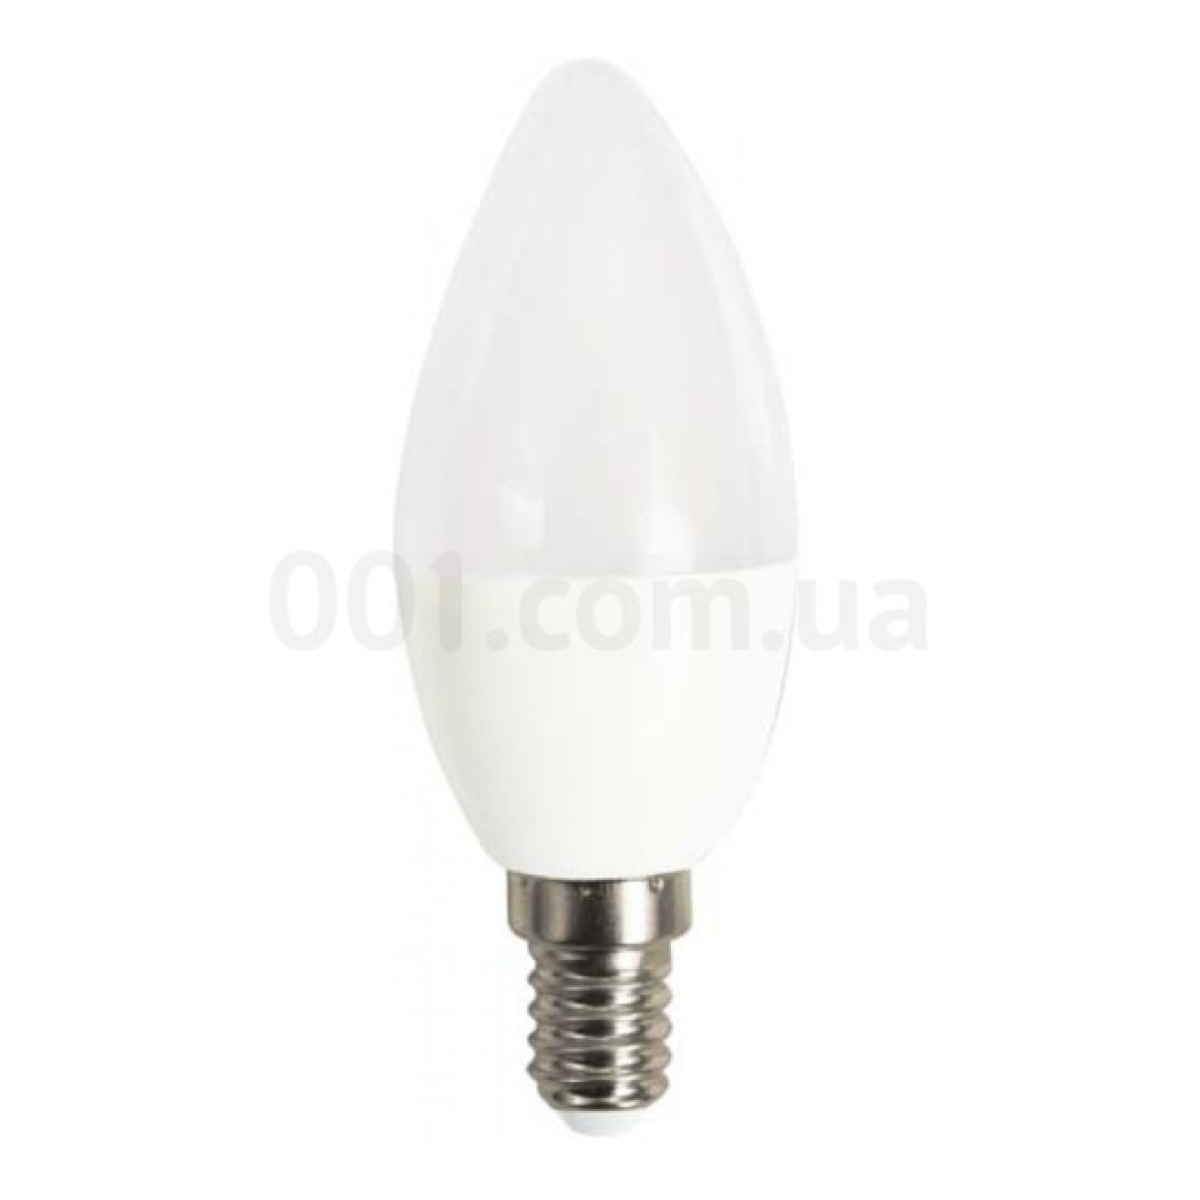 Светодиодная лампа LB-737 C37 (свеча) 6Вт 2700K E14, Feron 98_98.jpg